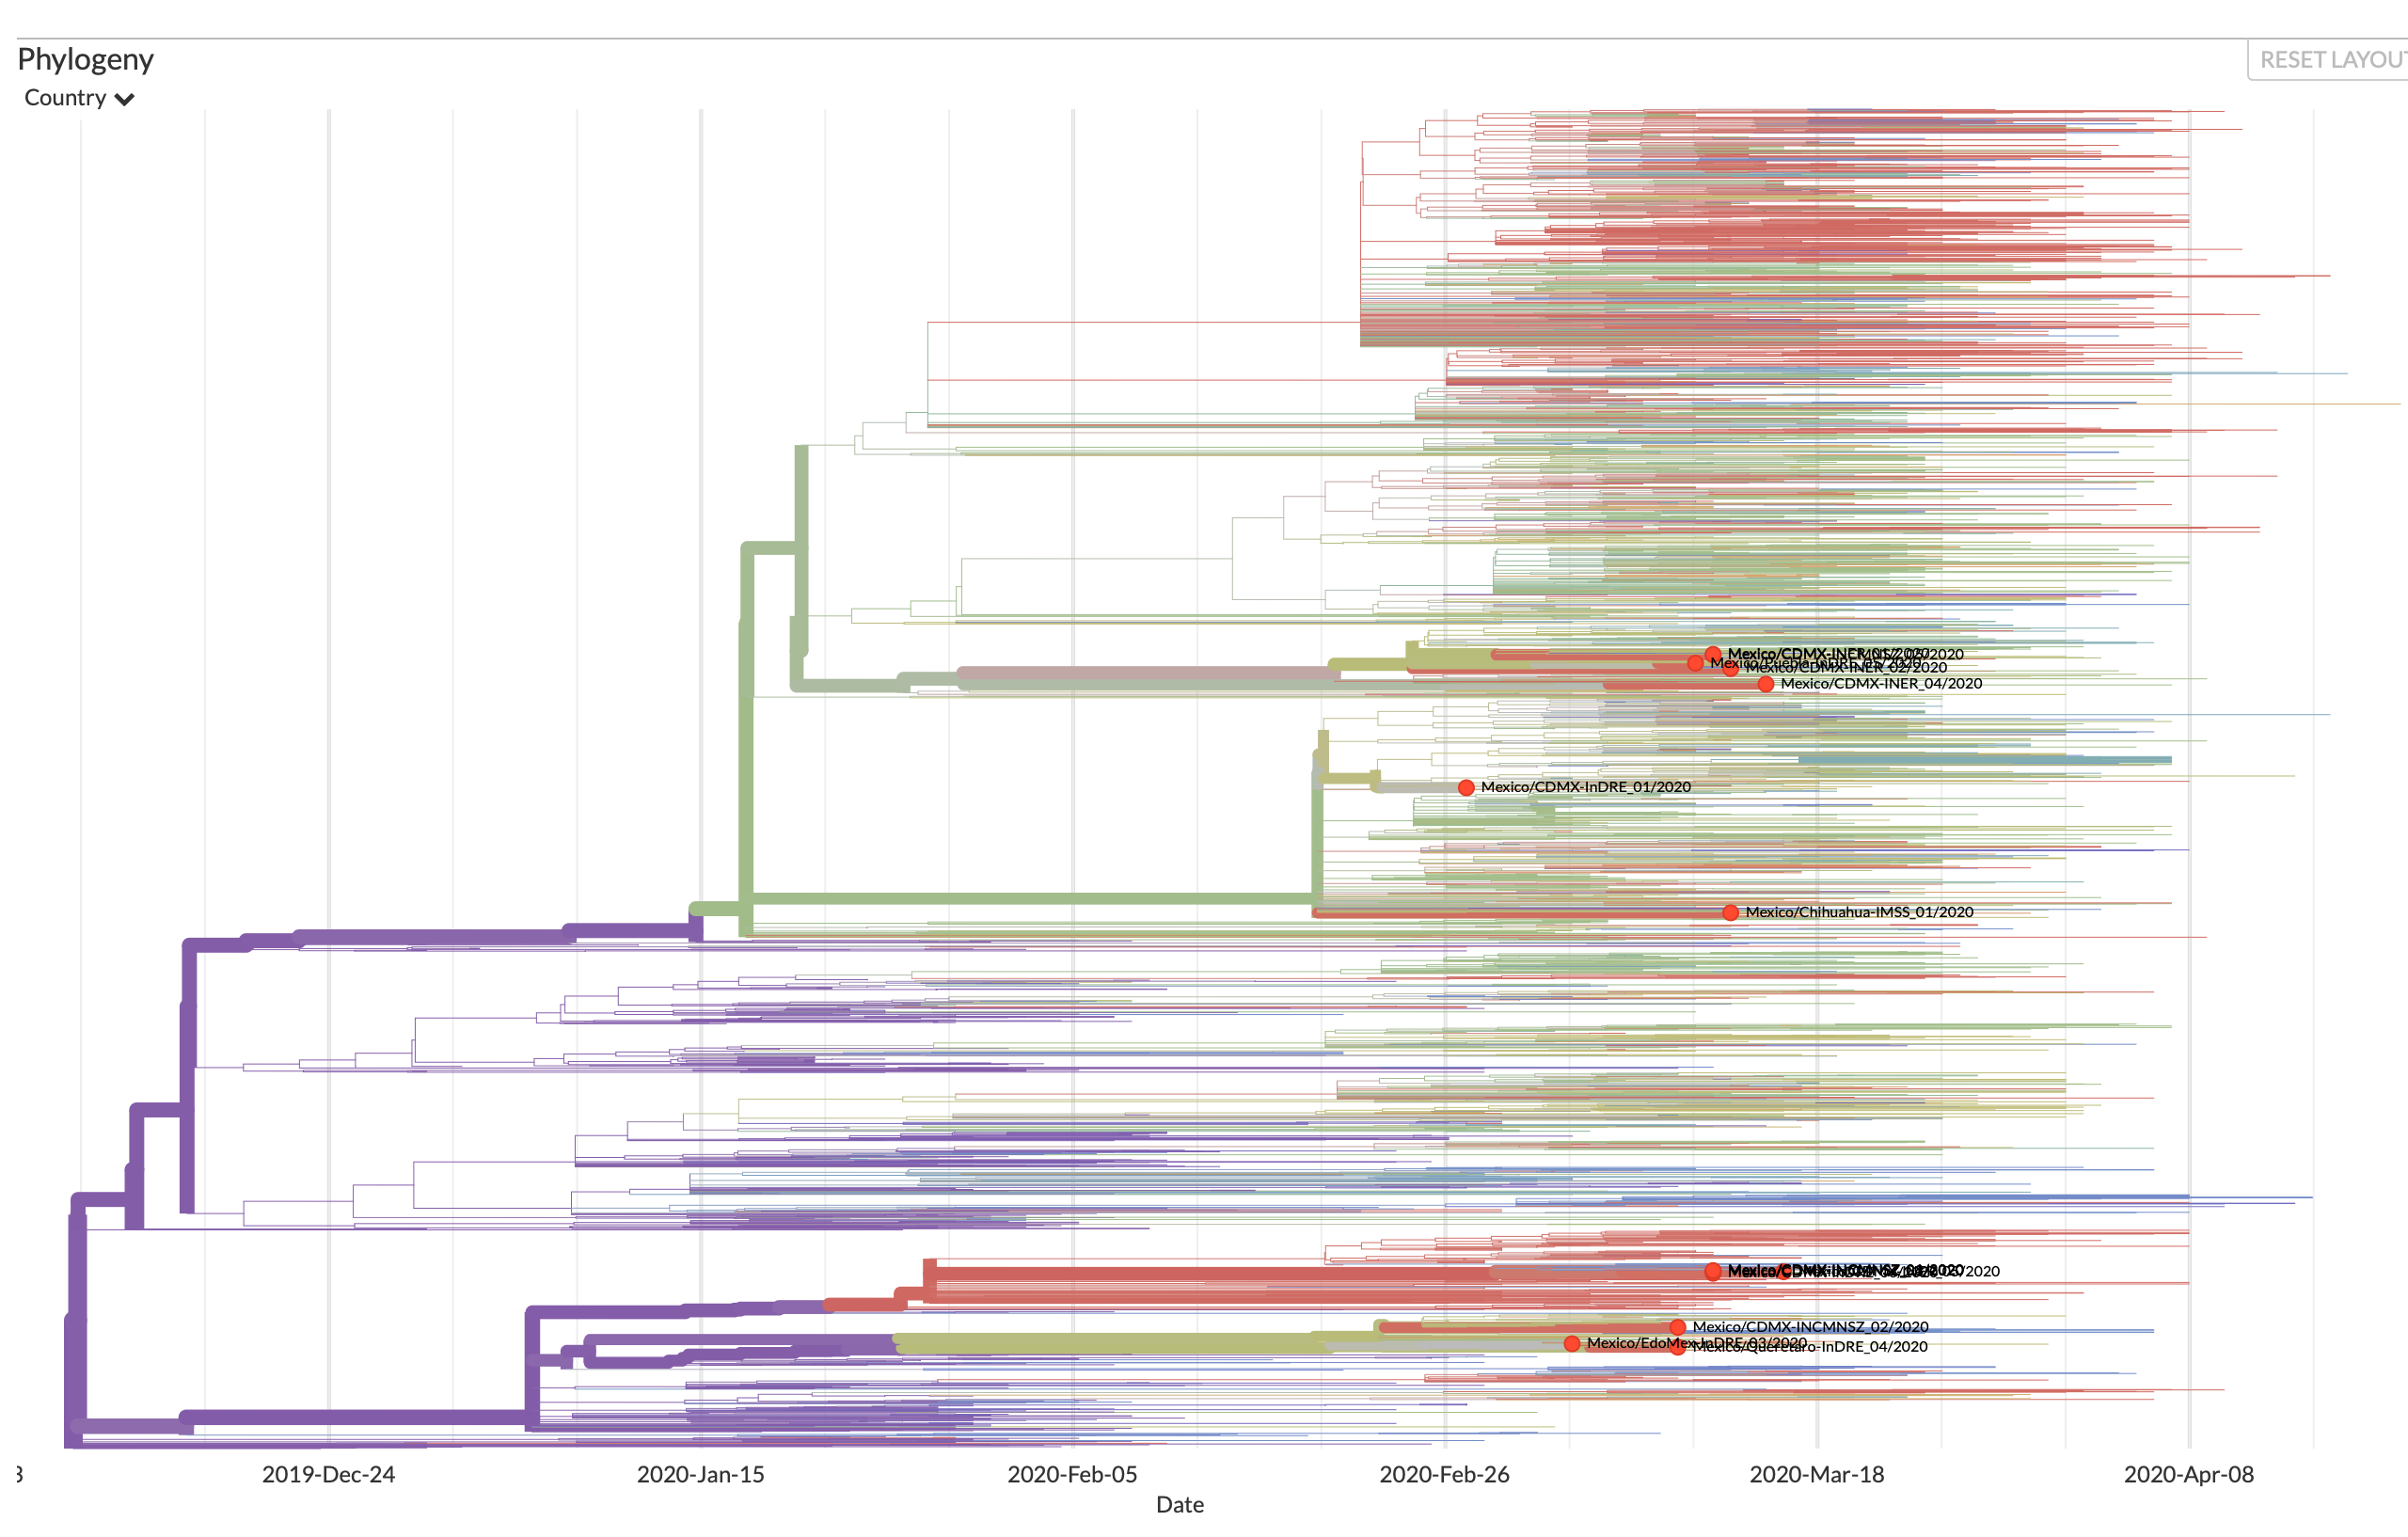 Mapa filogenético de relaciones genéticas entre los genomas obtenidos de personas infectadas con SARS-CoV-2. Los puntos rojos muestran las secuencias mexicanas.